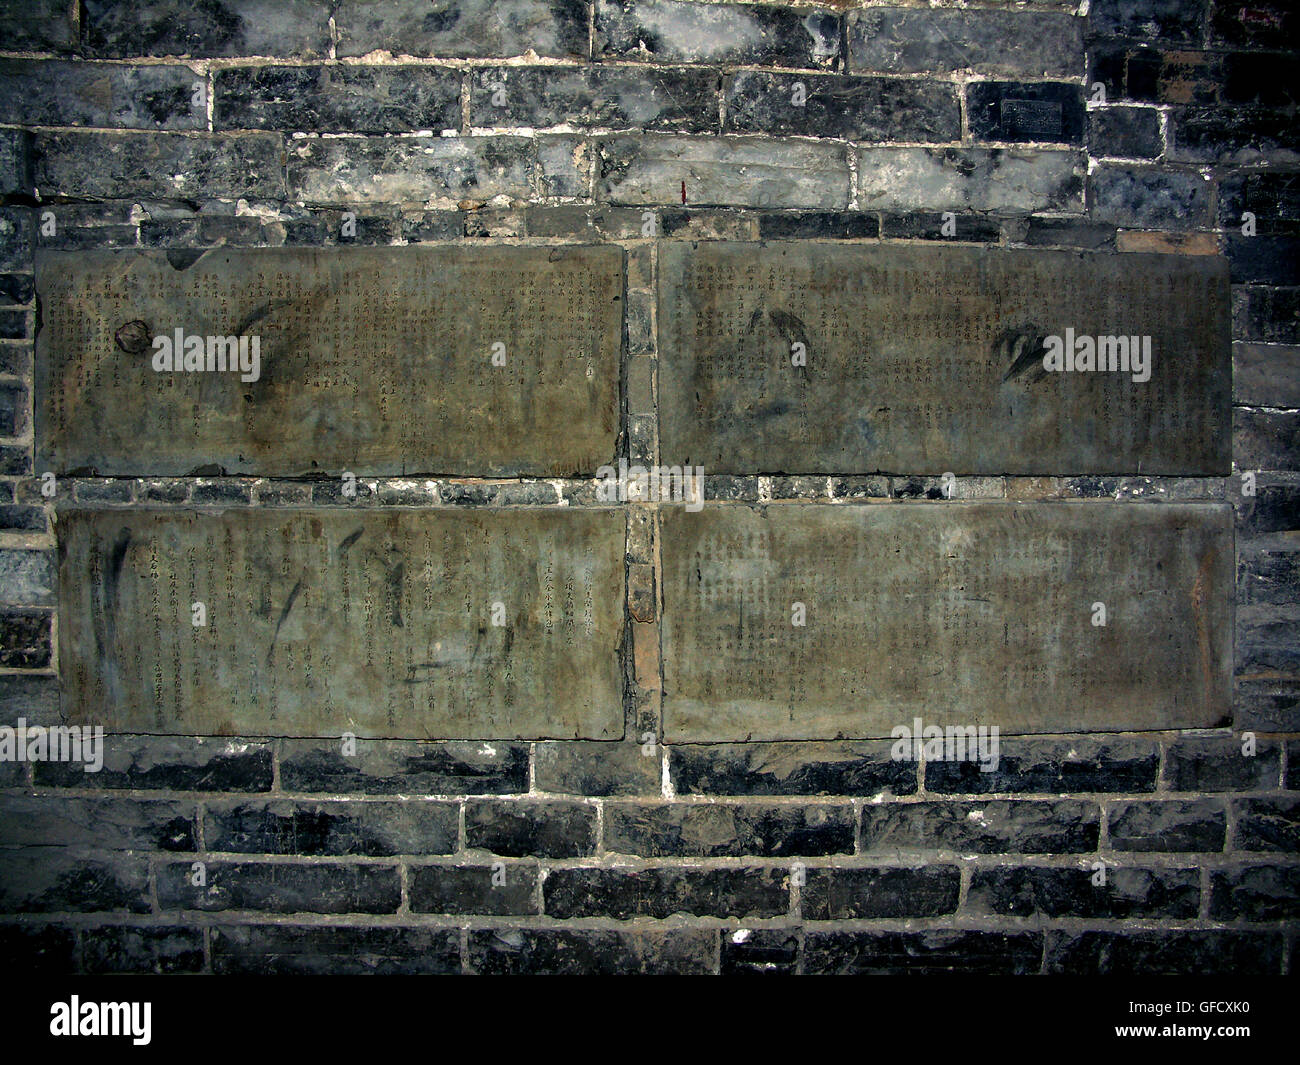 Des plaques commémoratives dans l'enceinte de la vieille ville de Shanghai autour. Nánshì, Shanghai. Banque D'Images